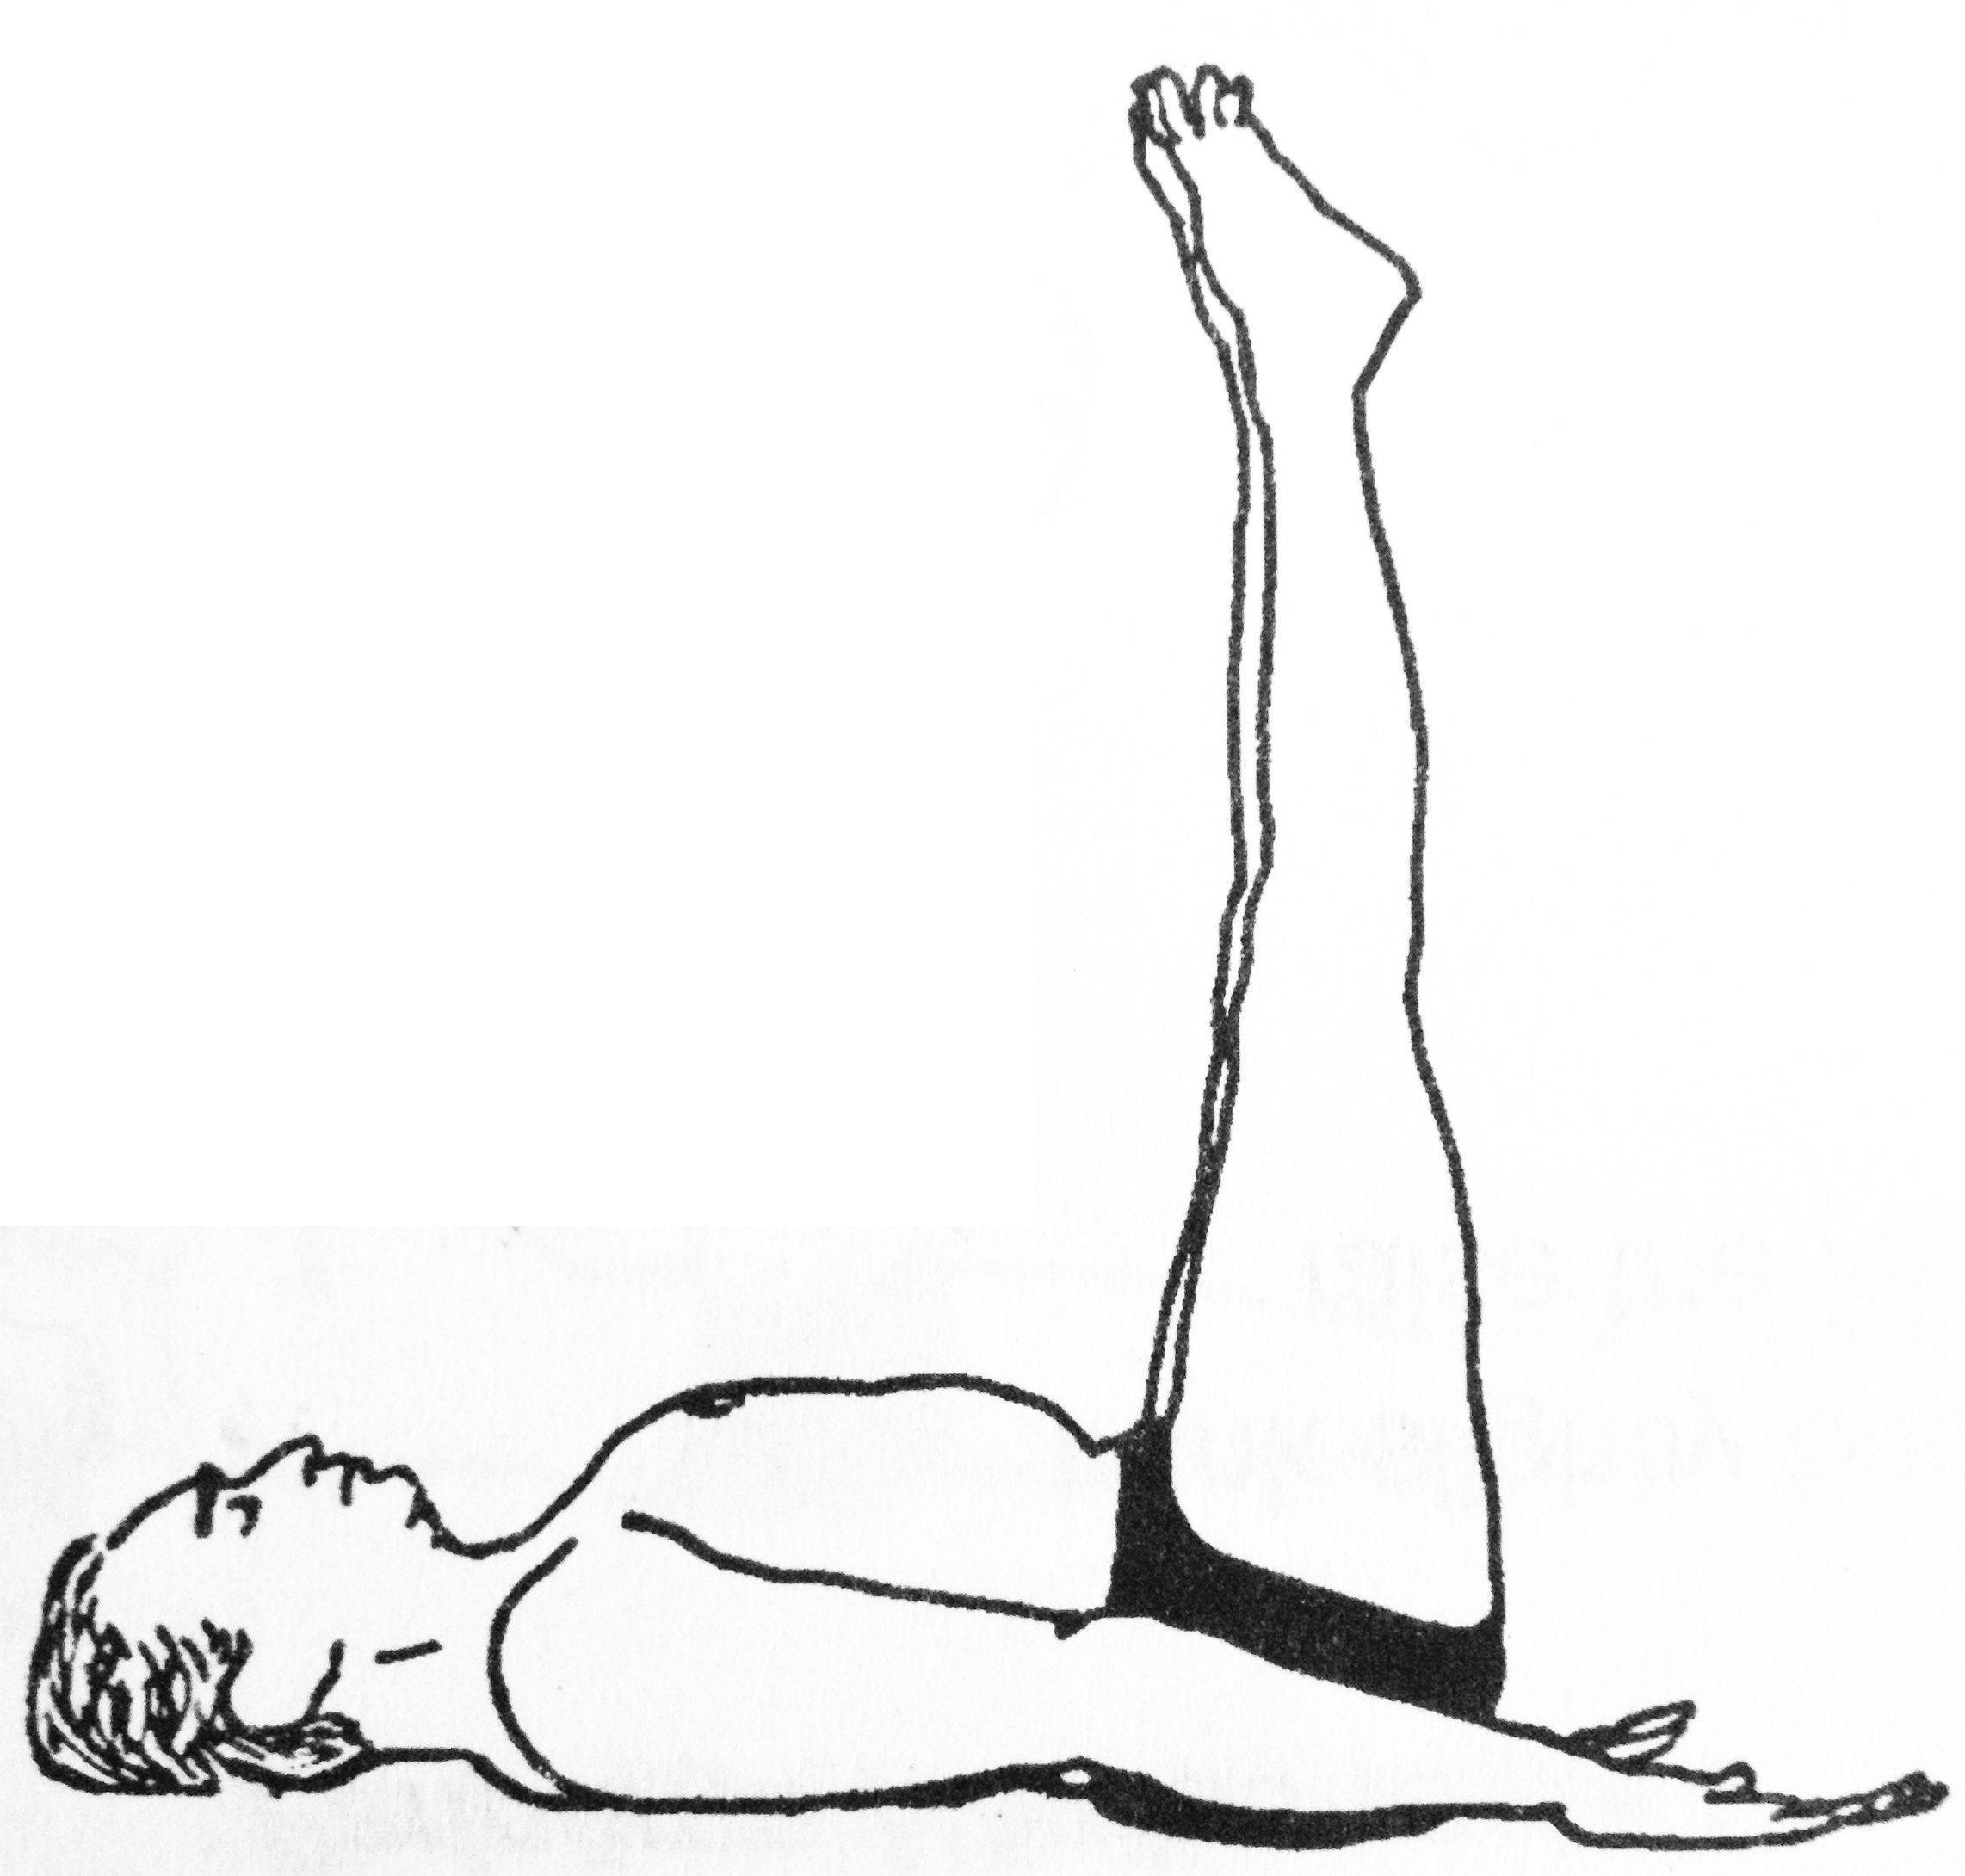 Yoga_method | йога_метод |   постнатальная йога  как метод восстановления организма после беременности и родов | yoga_method | йога_метод